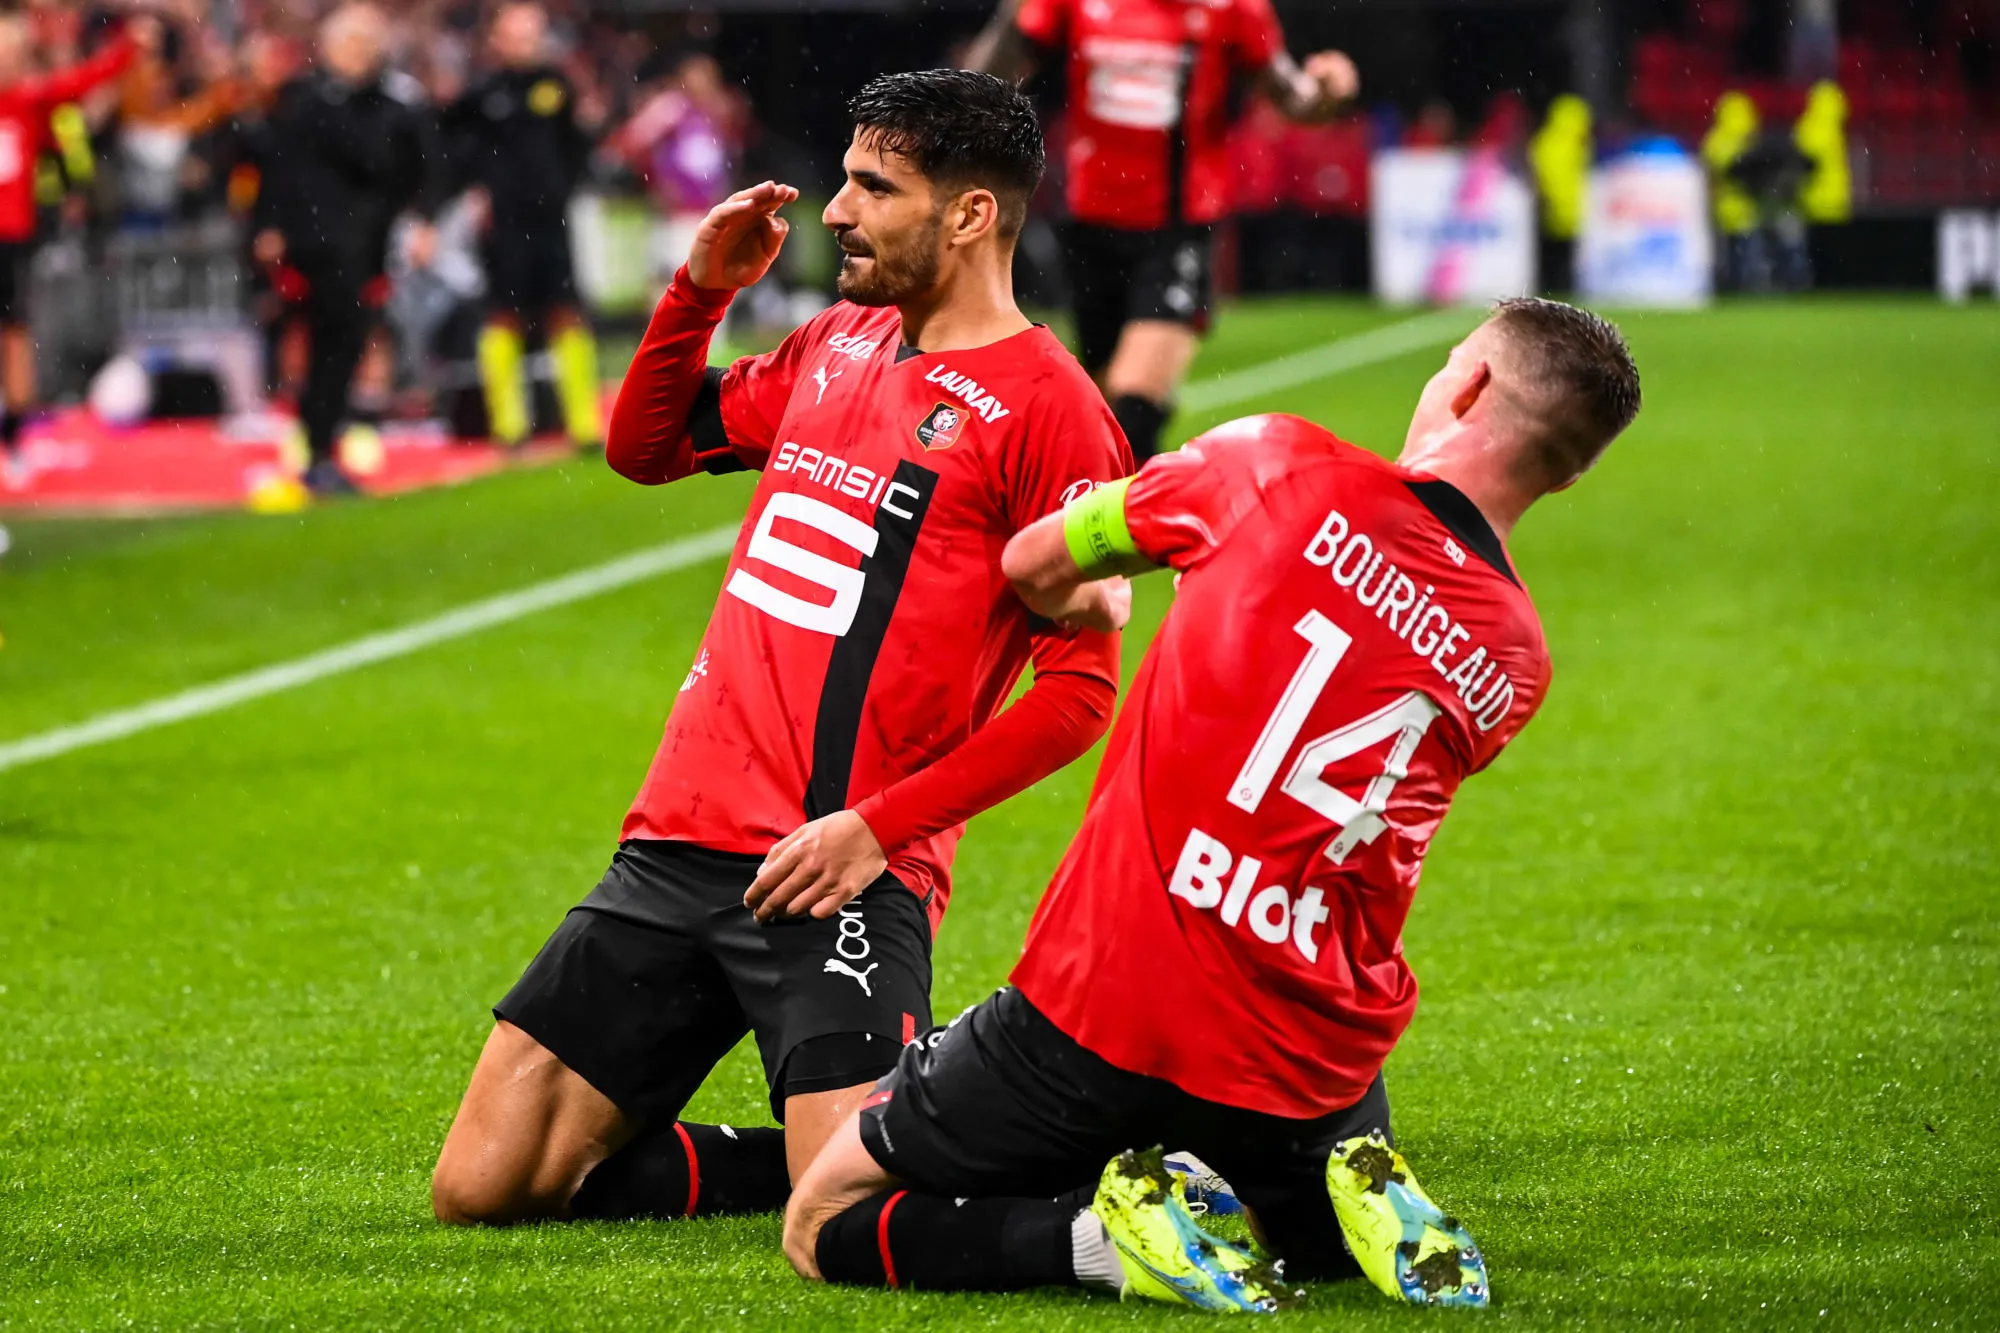 Pronostic Rennes Montpellier : analyse, cotes et prono du match de Ligue 1